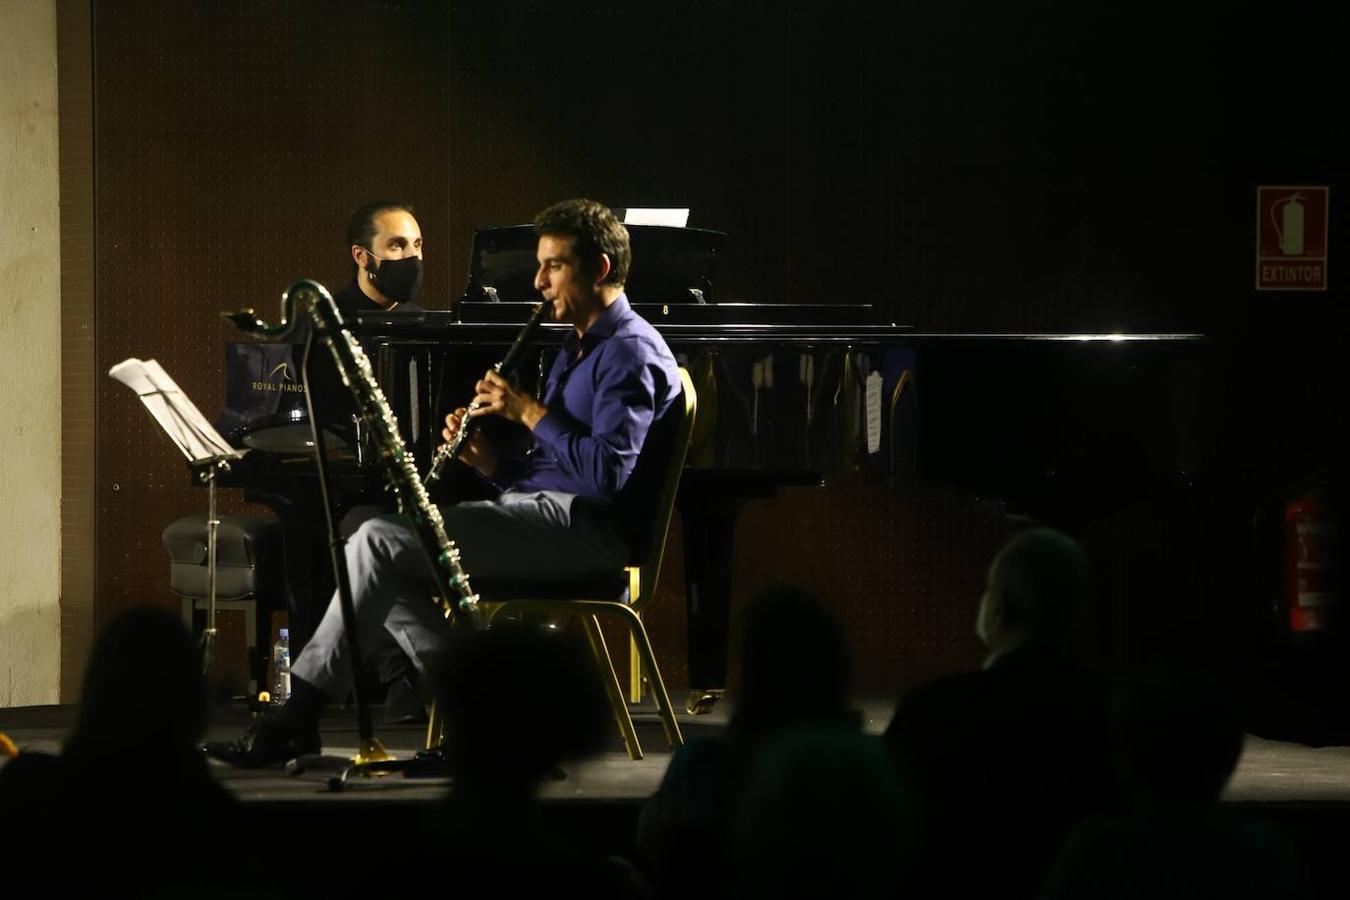 El último concierto del Festival de Piano de Córdoba, en imágenes